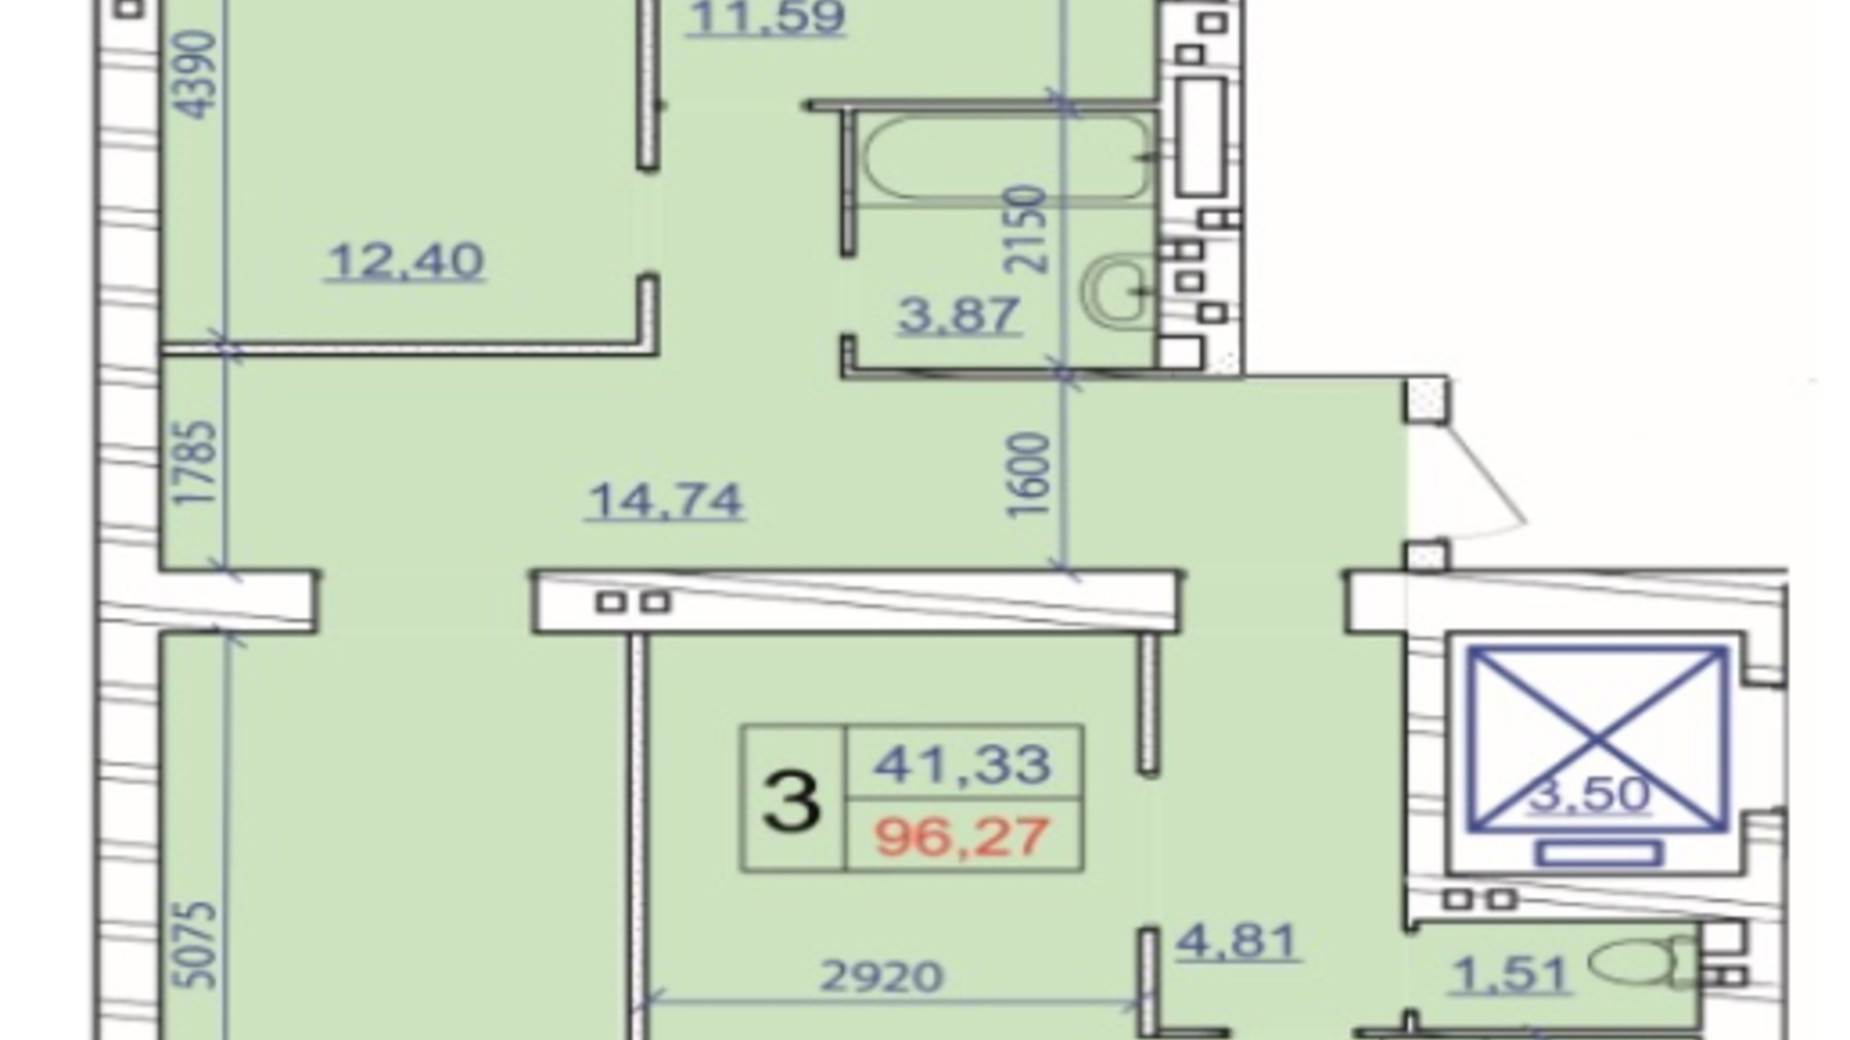 Планировка 3-комнатной квартиры в ЖК Grand Royal 96.27 м², фото 707923